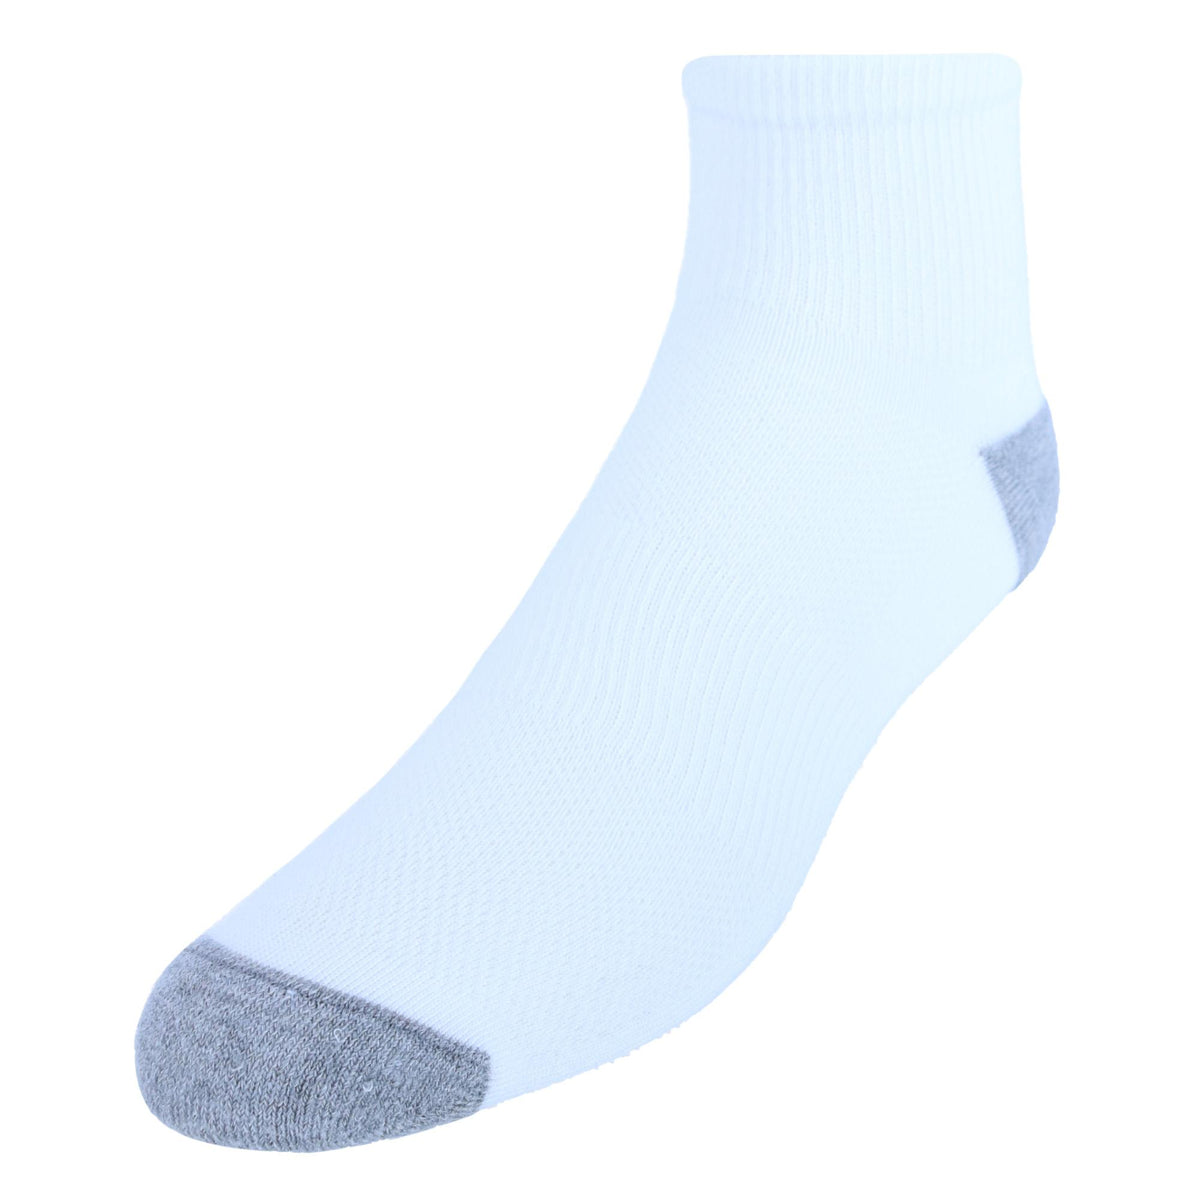 Men's FreshIQ X-Temp Ankle Socks (12 Pack) by Hanes | Ankle Socks at ...